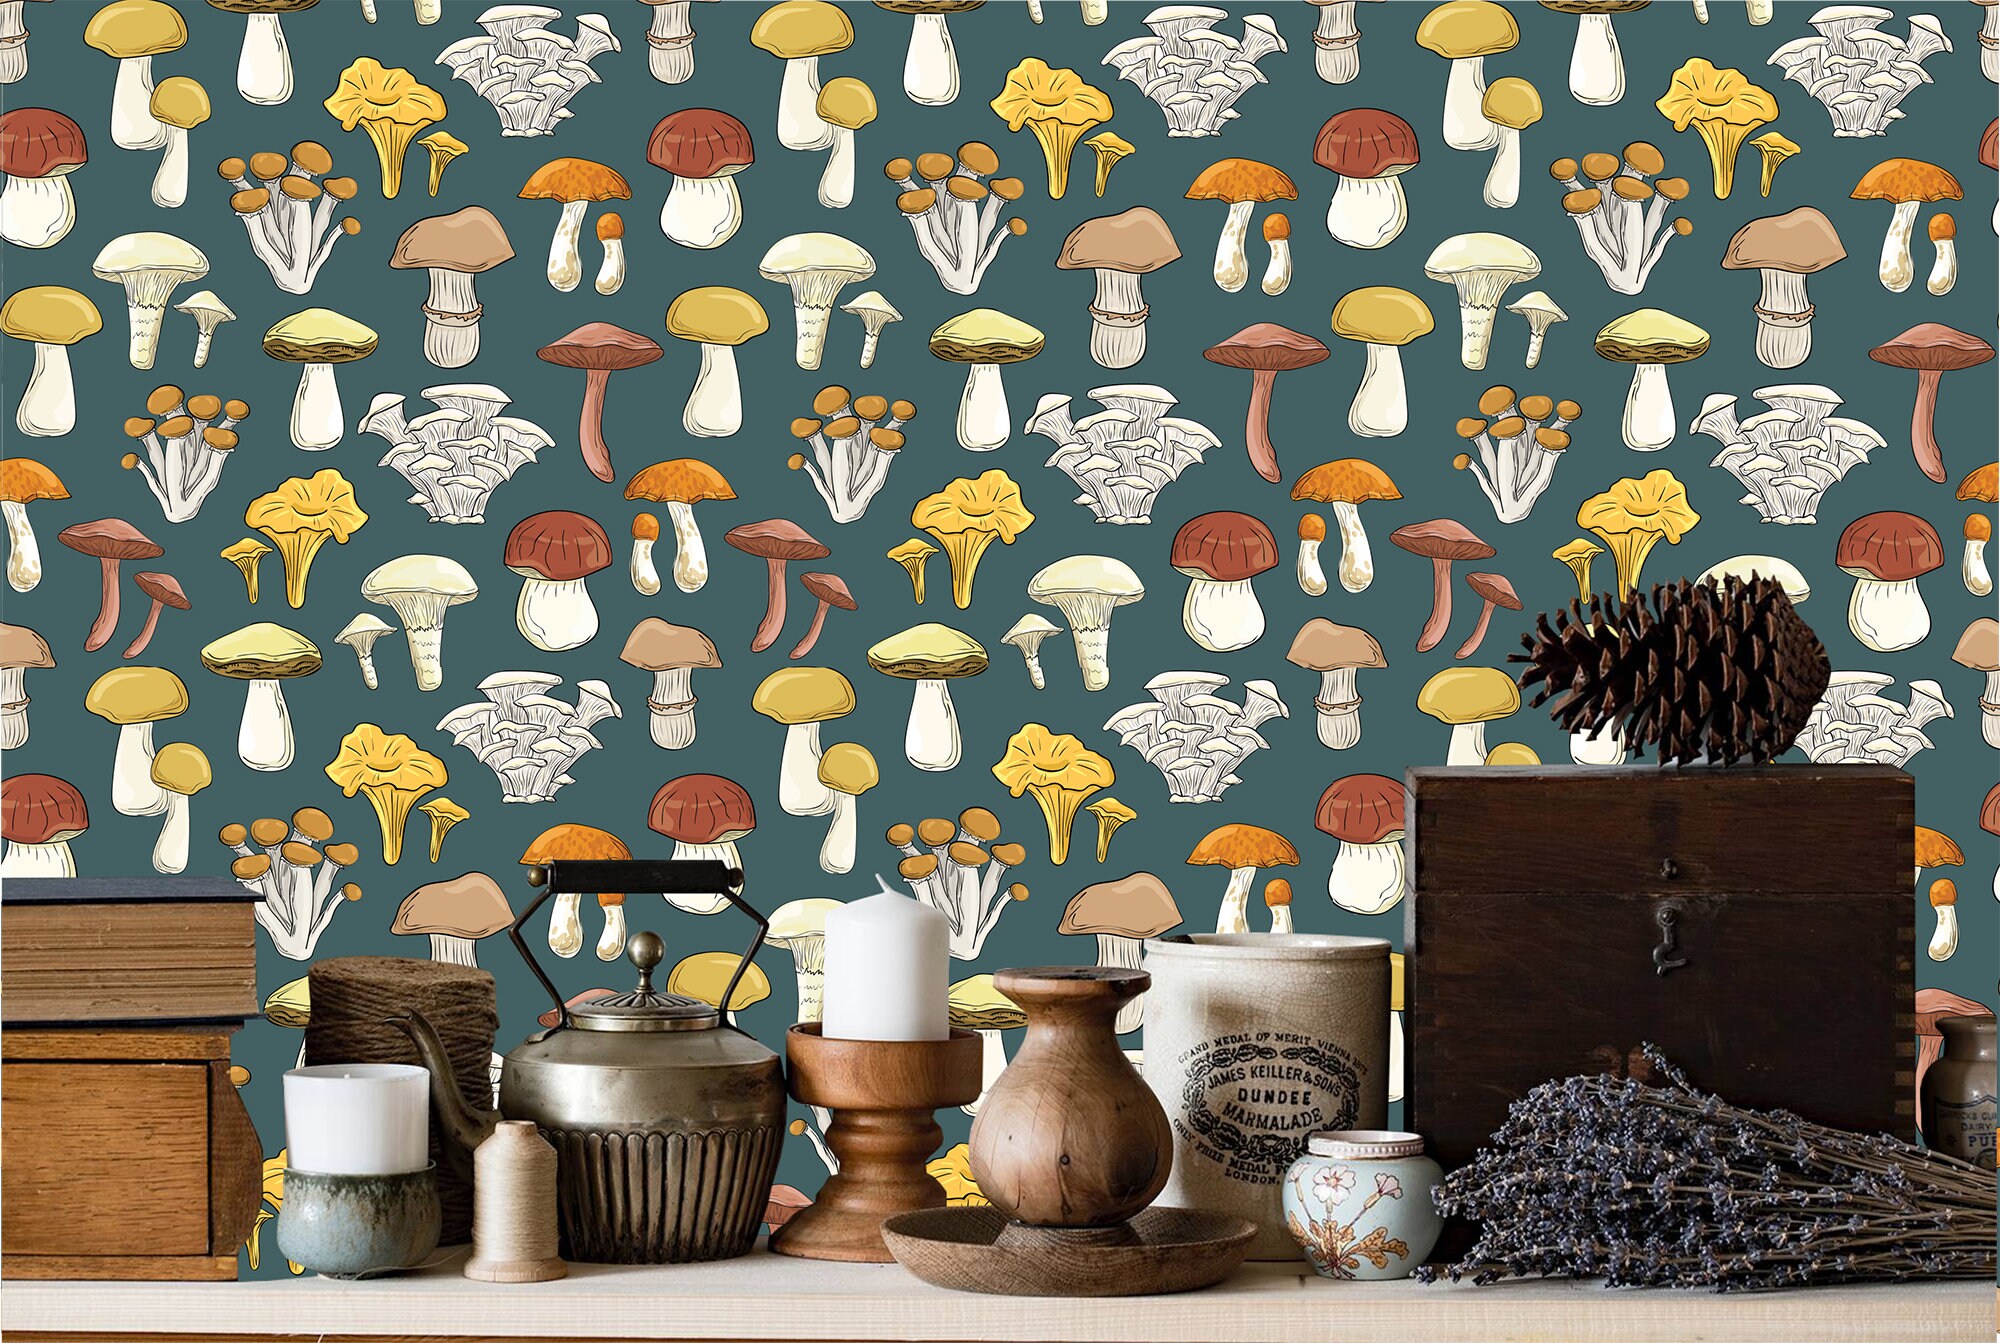 décoration murale cuisine : papier peint lé unique champignons